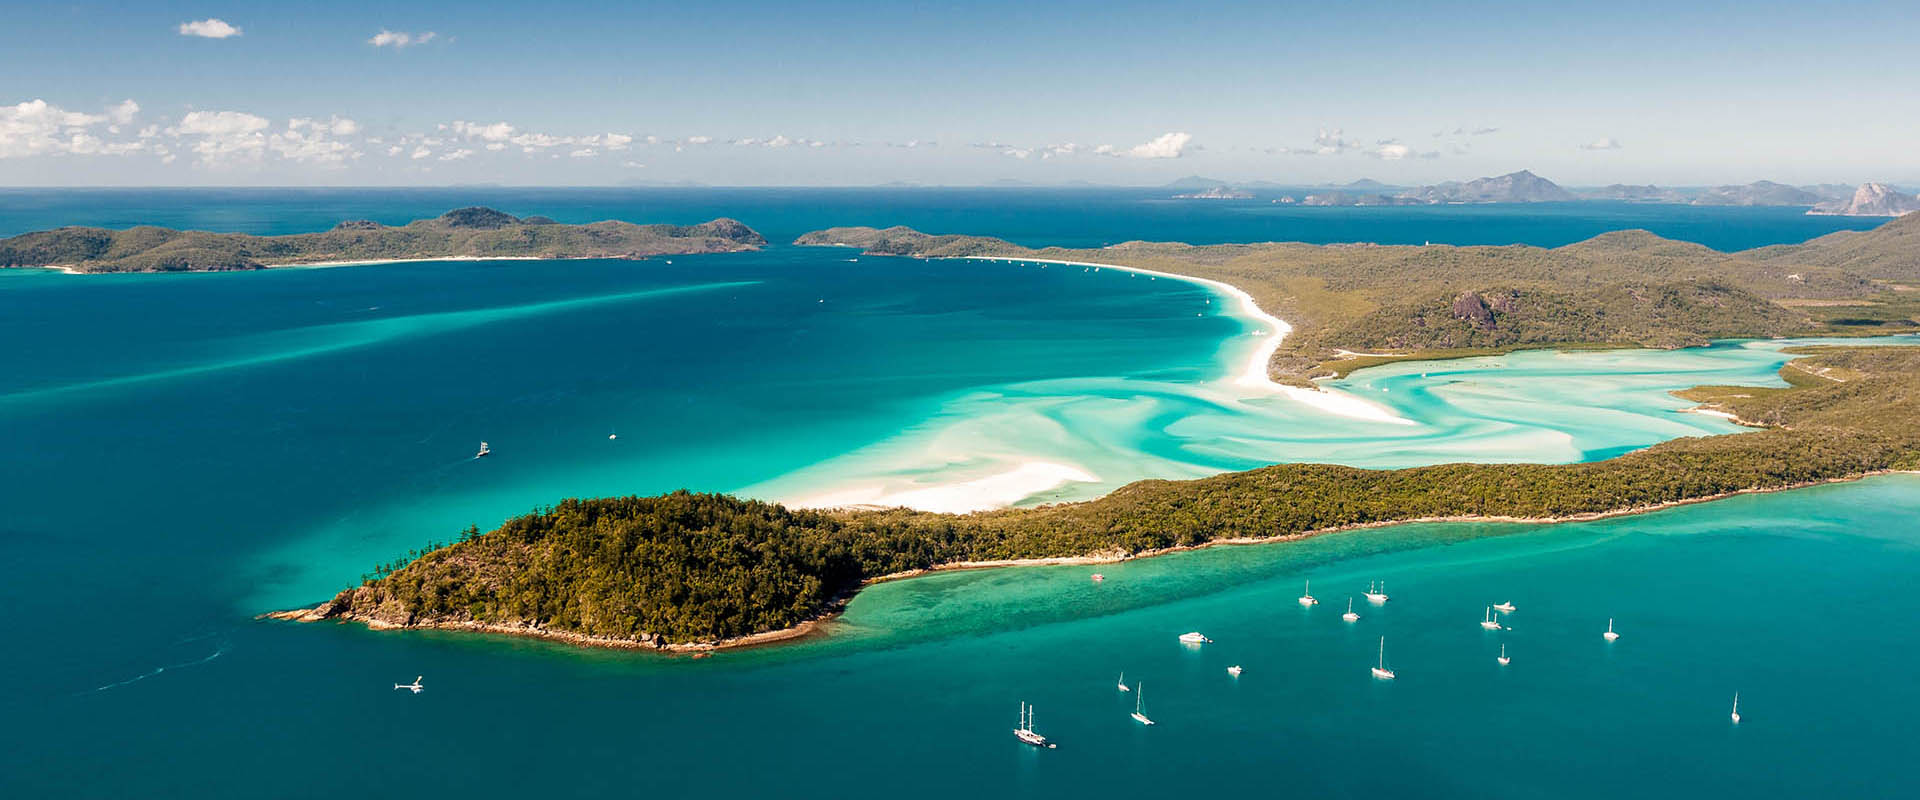 Whitsunday Islands Cruises